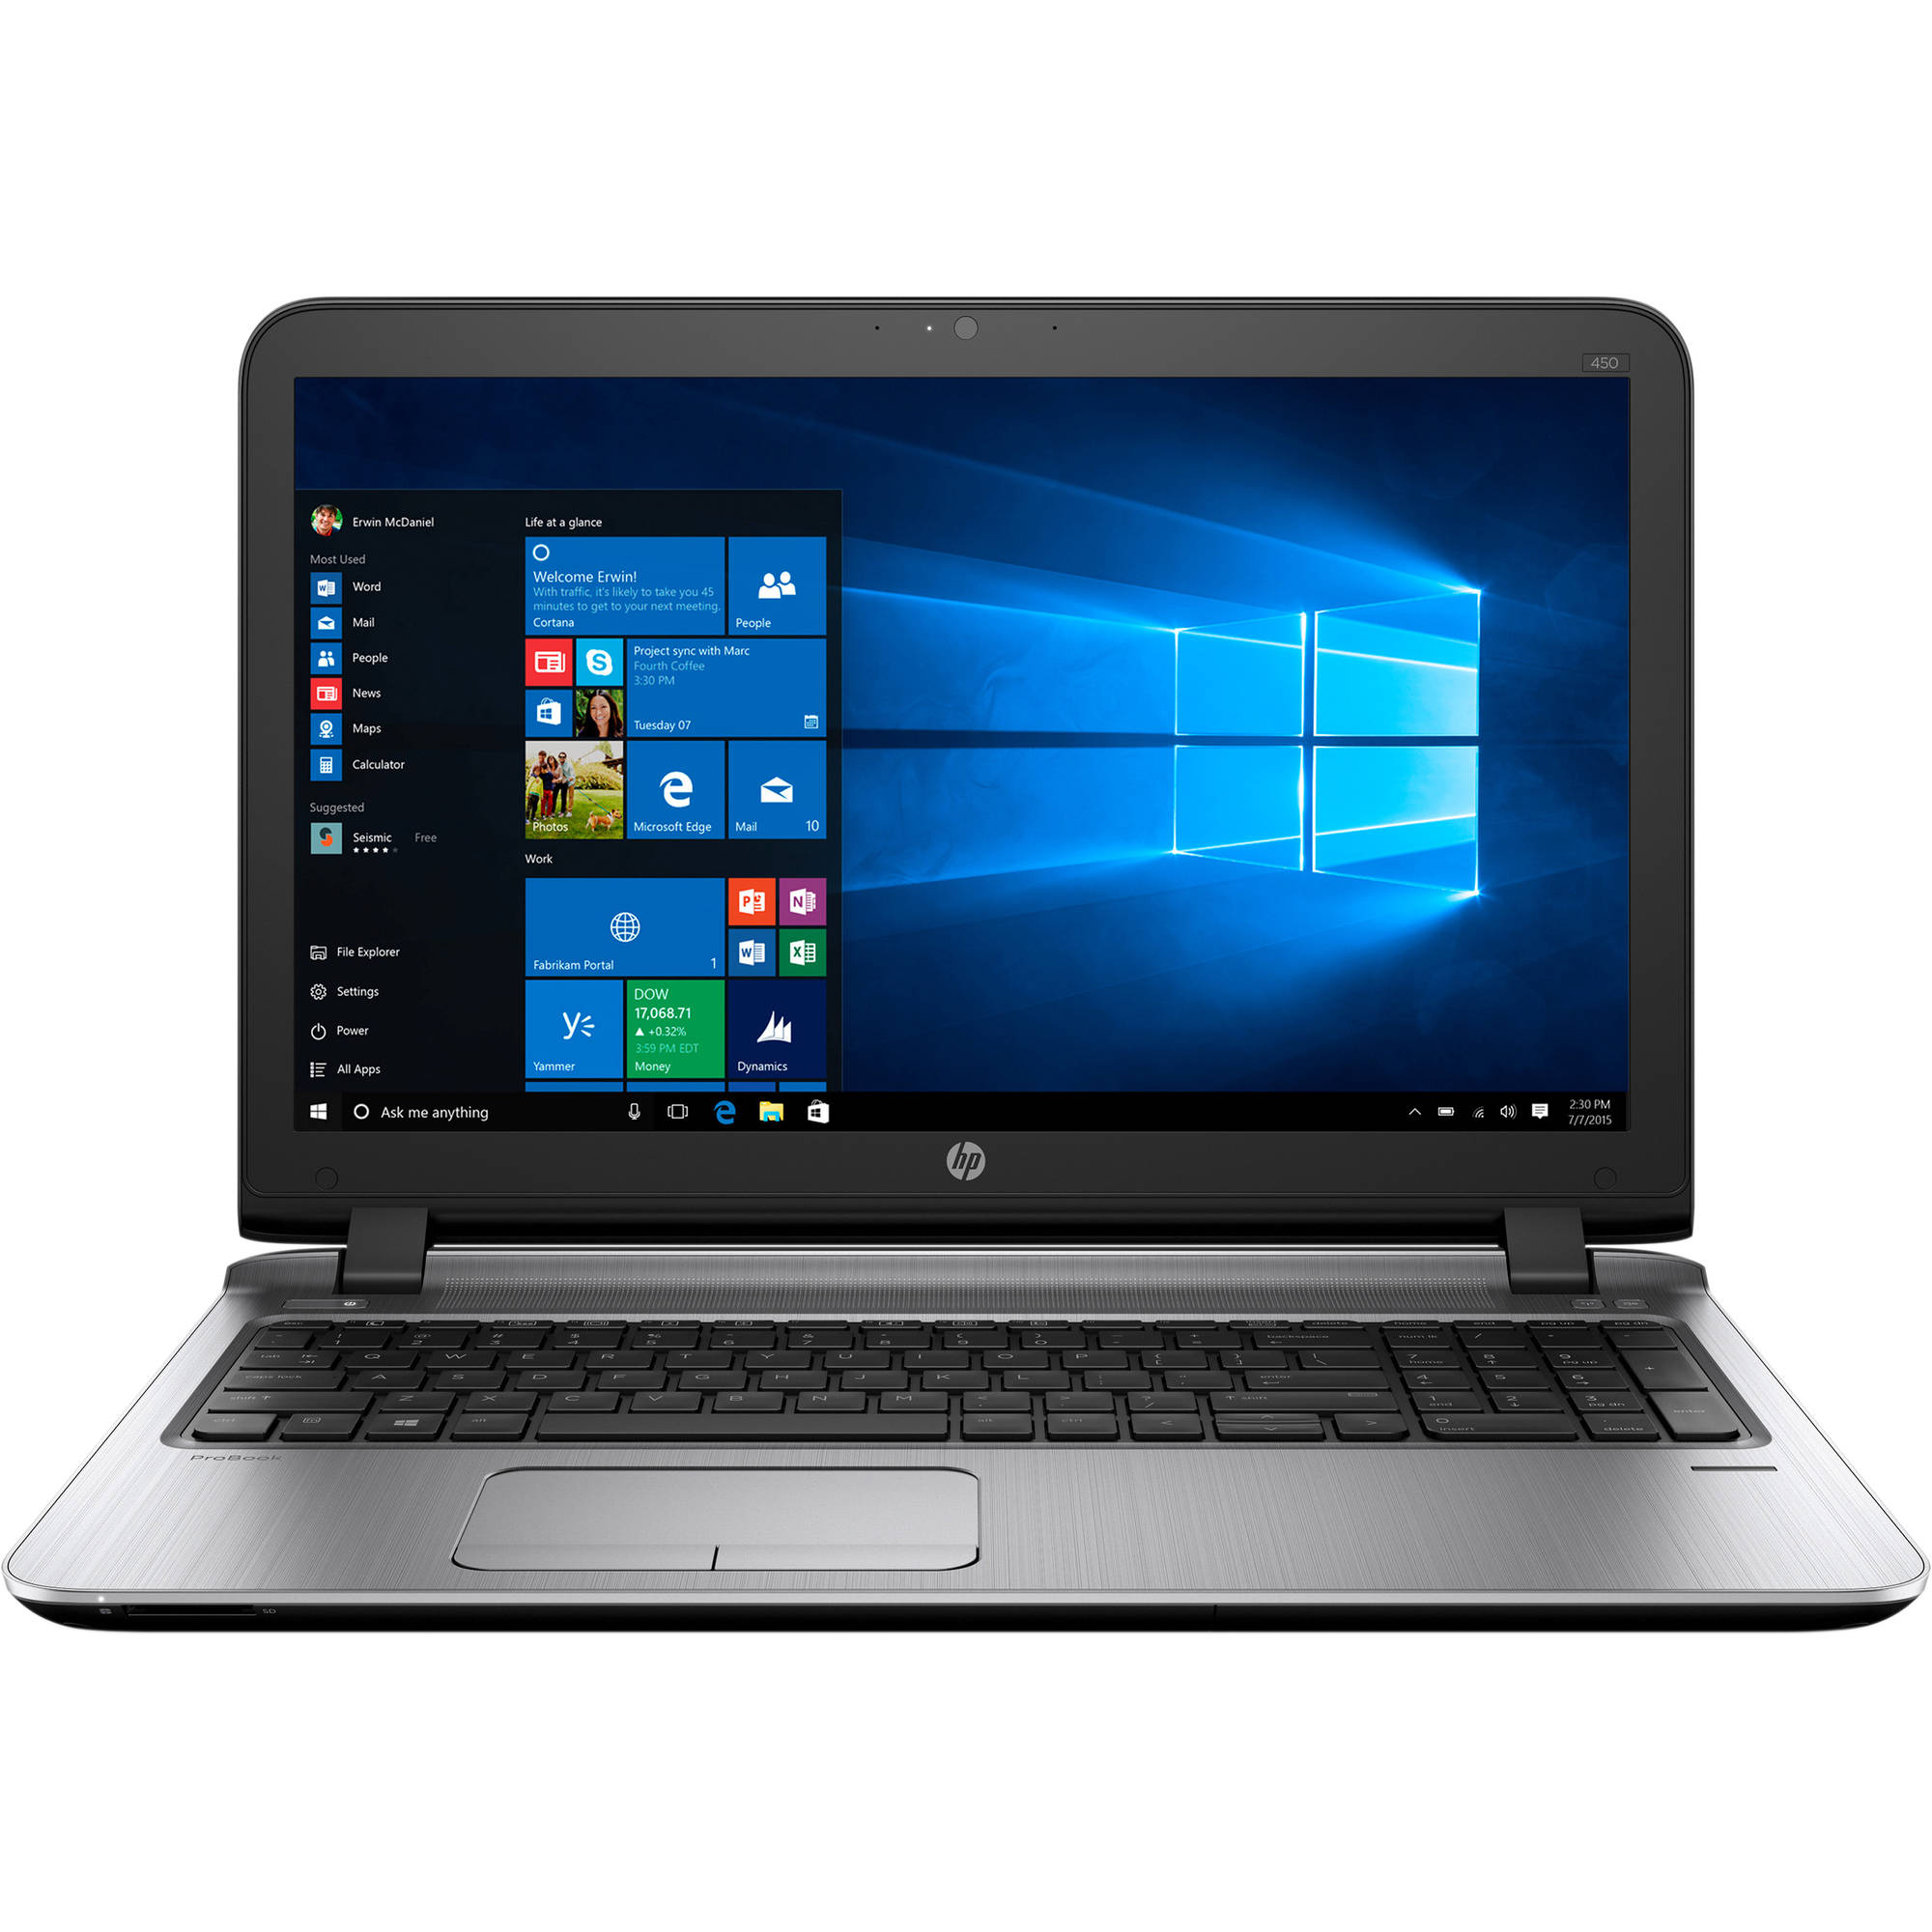 Laptop HP Probook 430 G3, Intel Core i5-6200U, 8GB DDR4, SSD 256GB, Intel HD Graphics, Windows 10 Pro